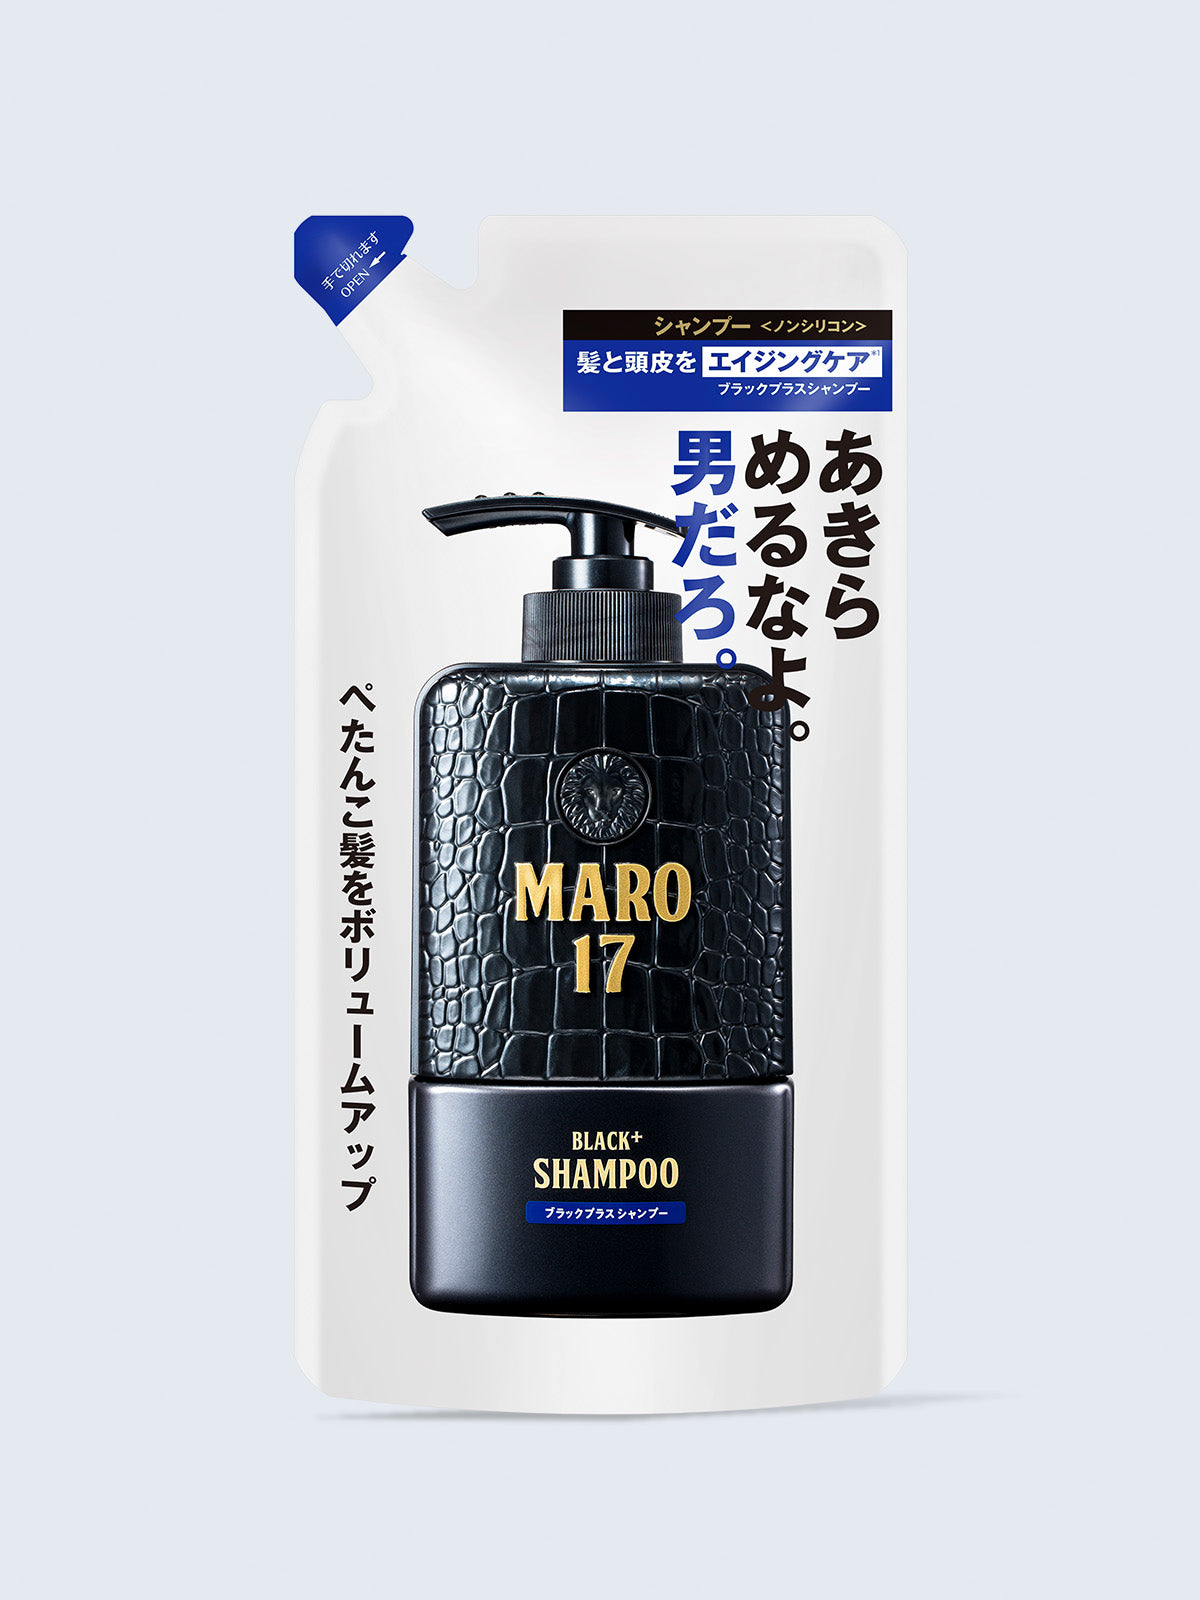 シャンプー ブラックプラス [ハリコシのある黒髪へ] ジェントルミントの香り MARO17 マーロ17 300mL 詰替